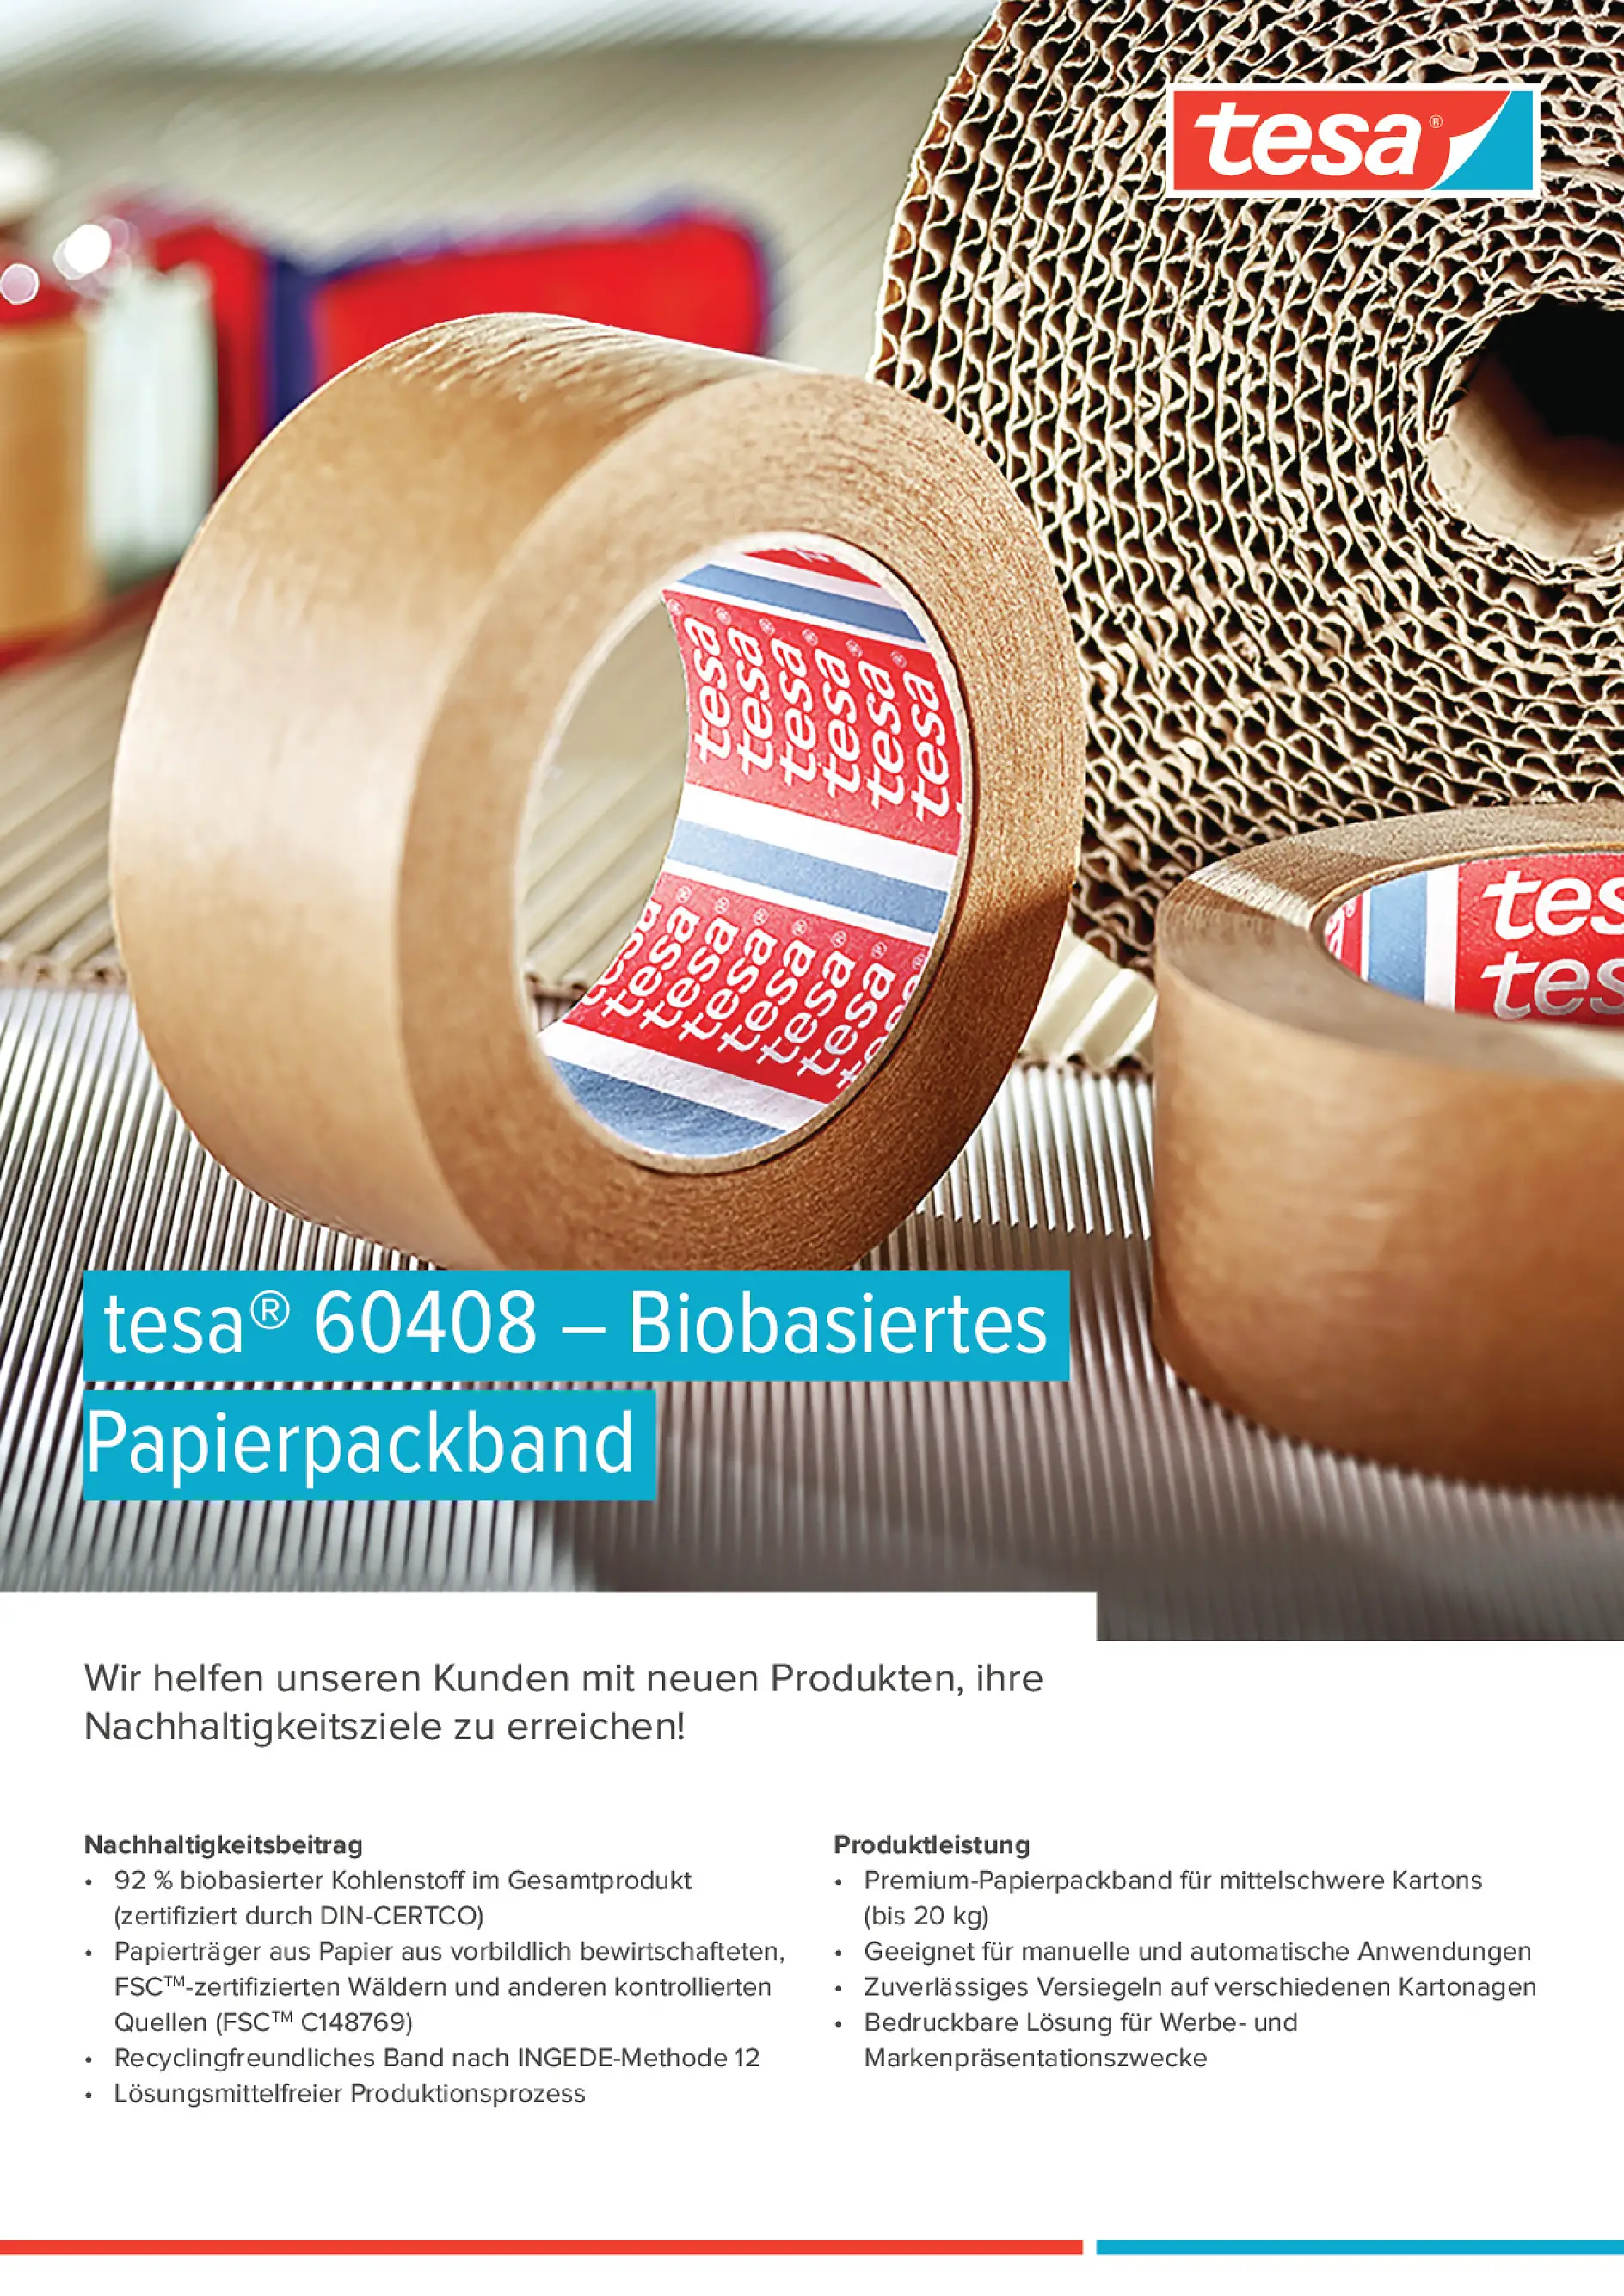 Überblick zu Vorteilen und nachhaltigerem Verpacken mit tesa 60408 biobasiertem Papierpackband.